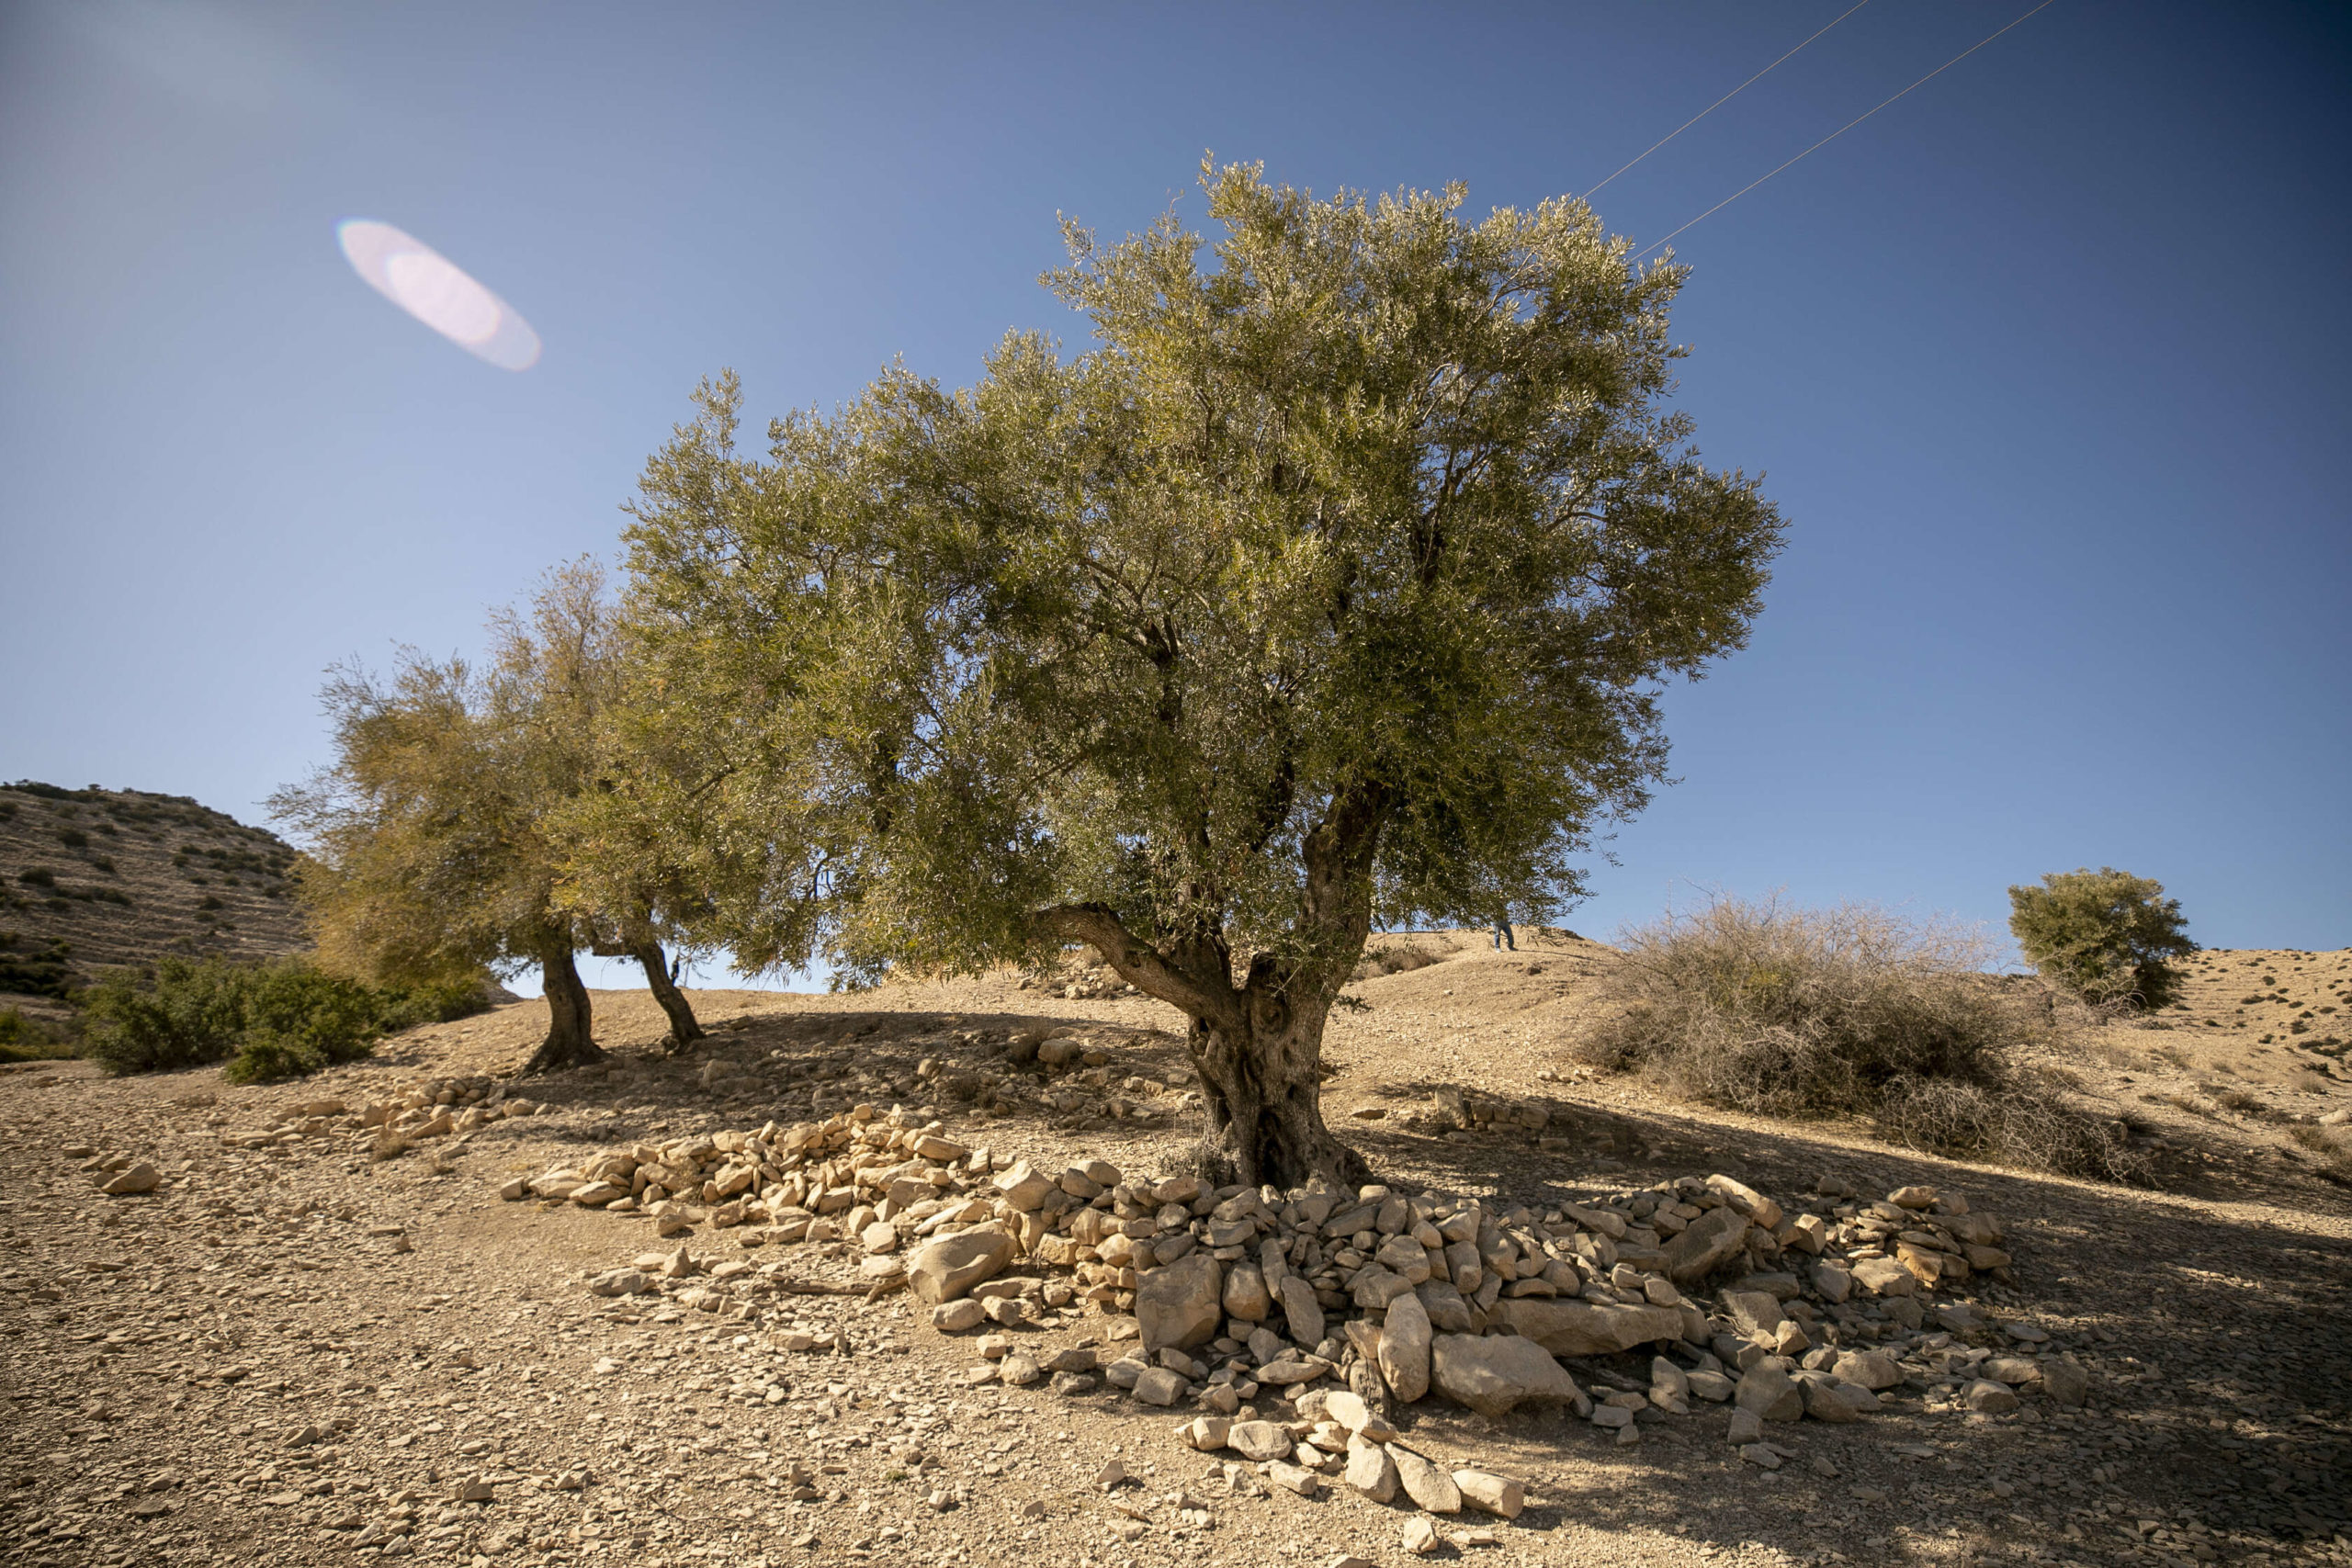 غرس الزيتون بمناطق فلاحية عديدة تابعة لمنطقة جبل وسلات في ولاية القيروان